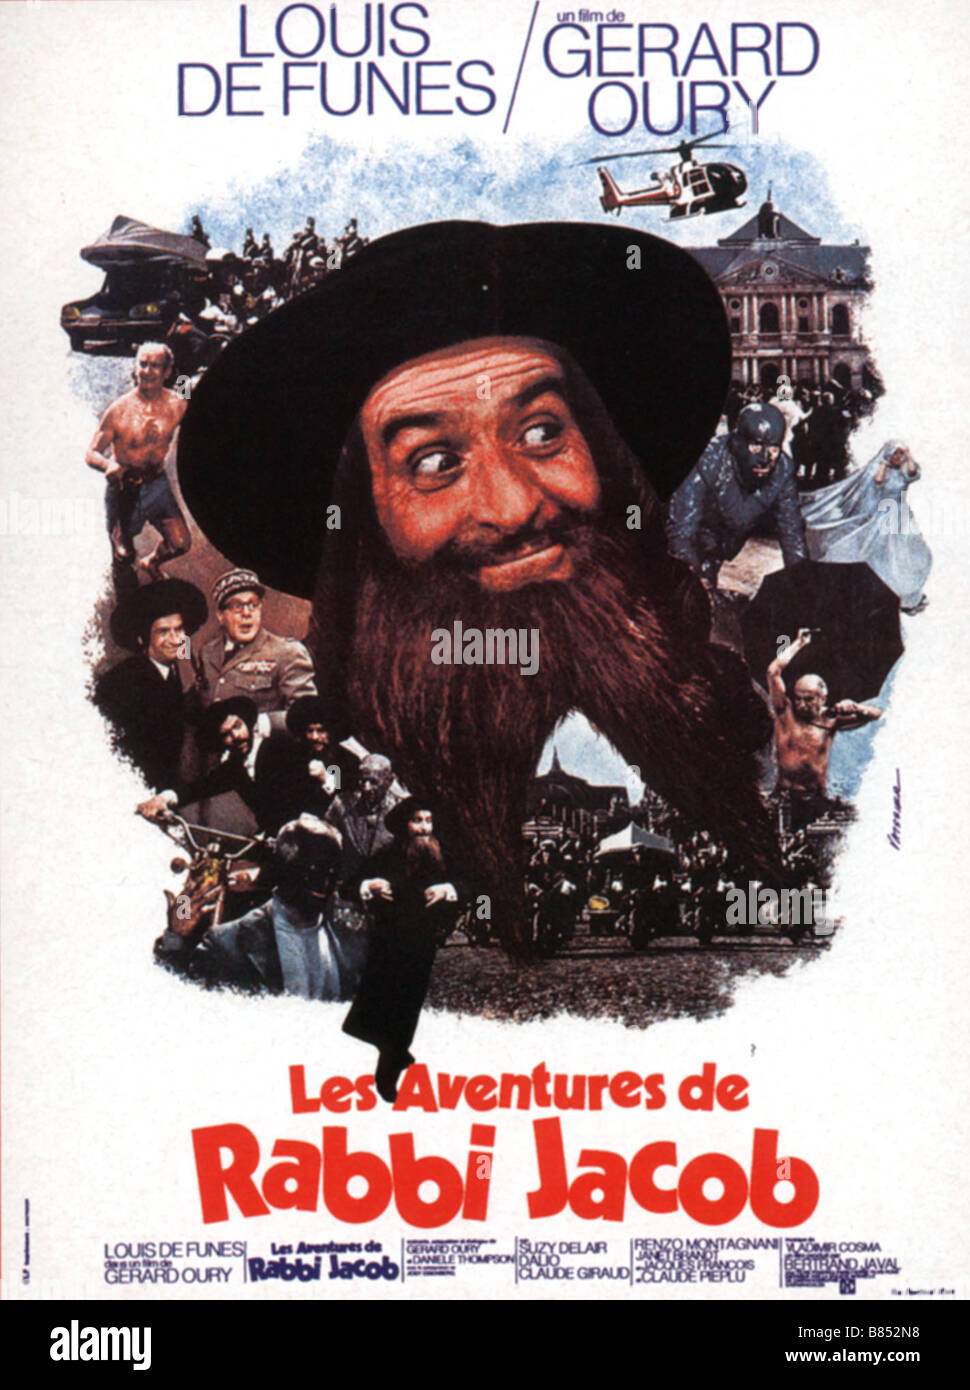 Les Aventures de Rabbi Jacob The Mad Adventures of 'Rabbi' Jacob Année :  1973 France / Italy affiche, poster Louis de Funès Director : Gérard Oury  Stock Photo - Alamy